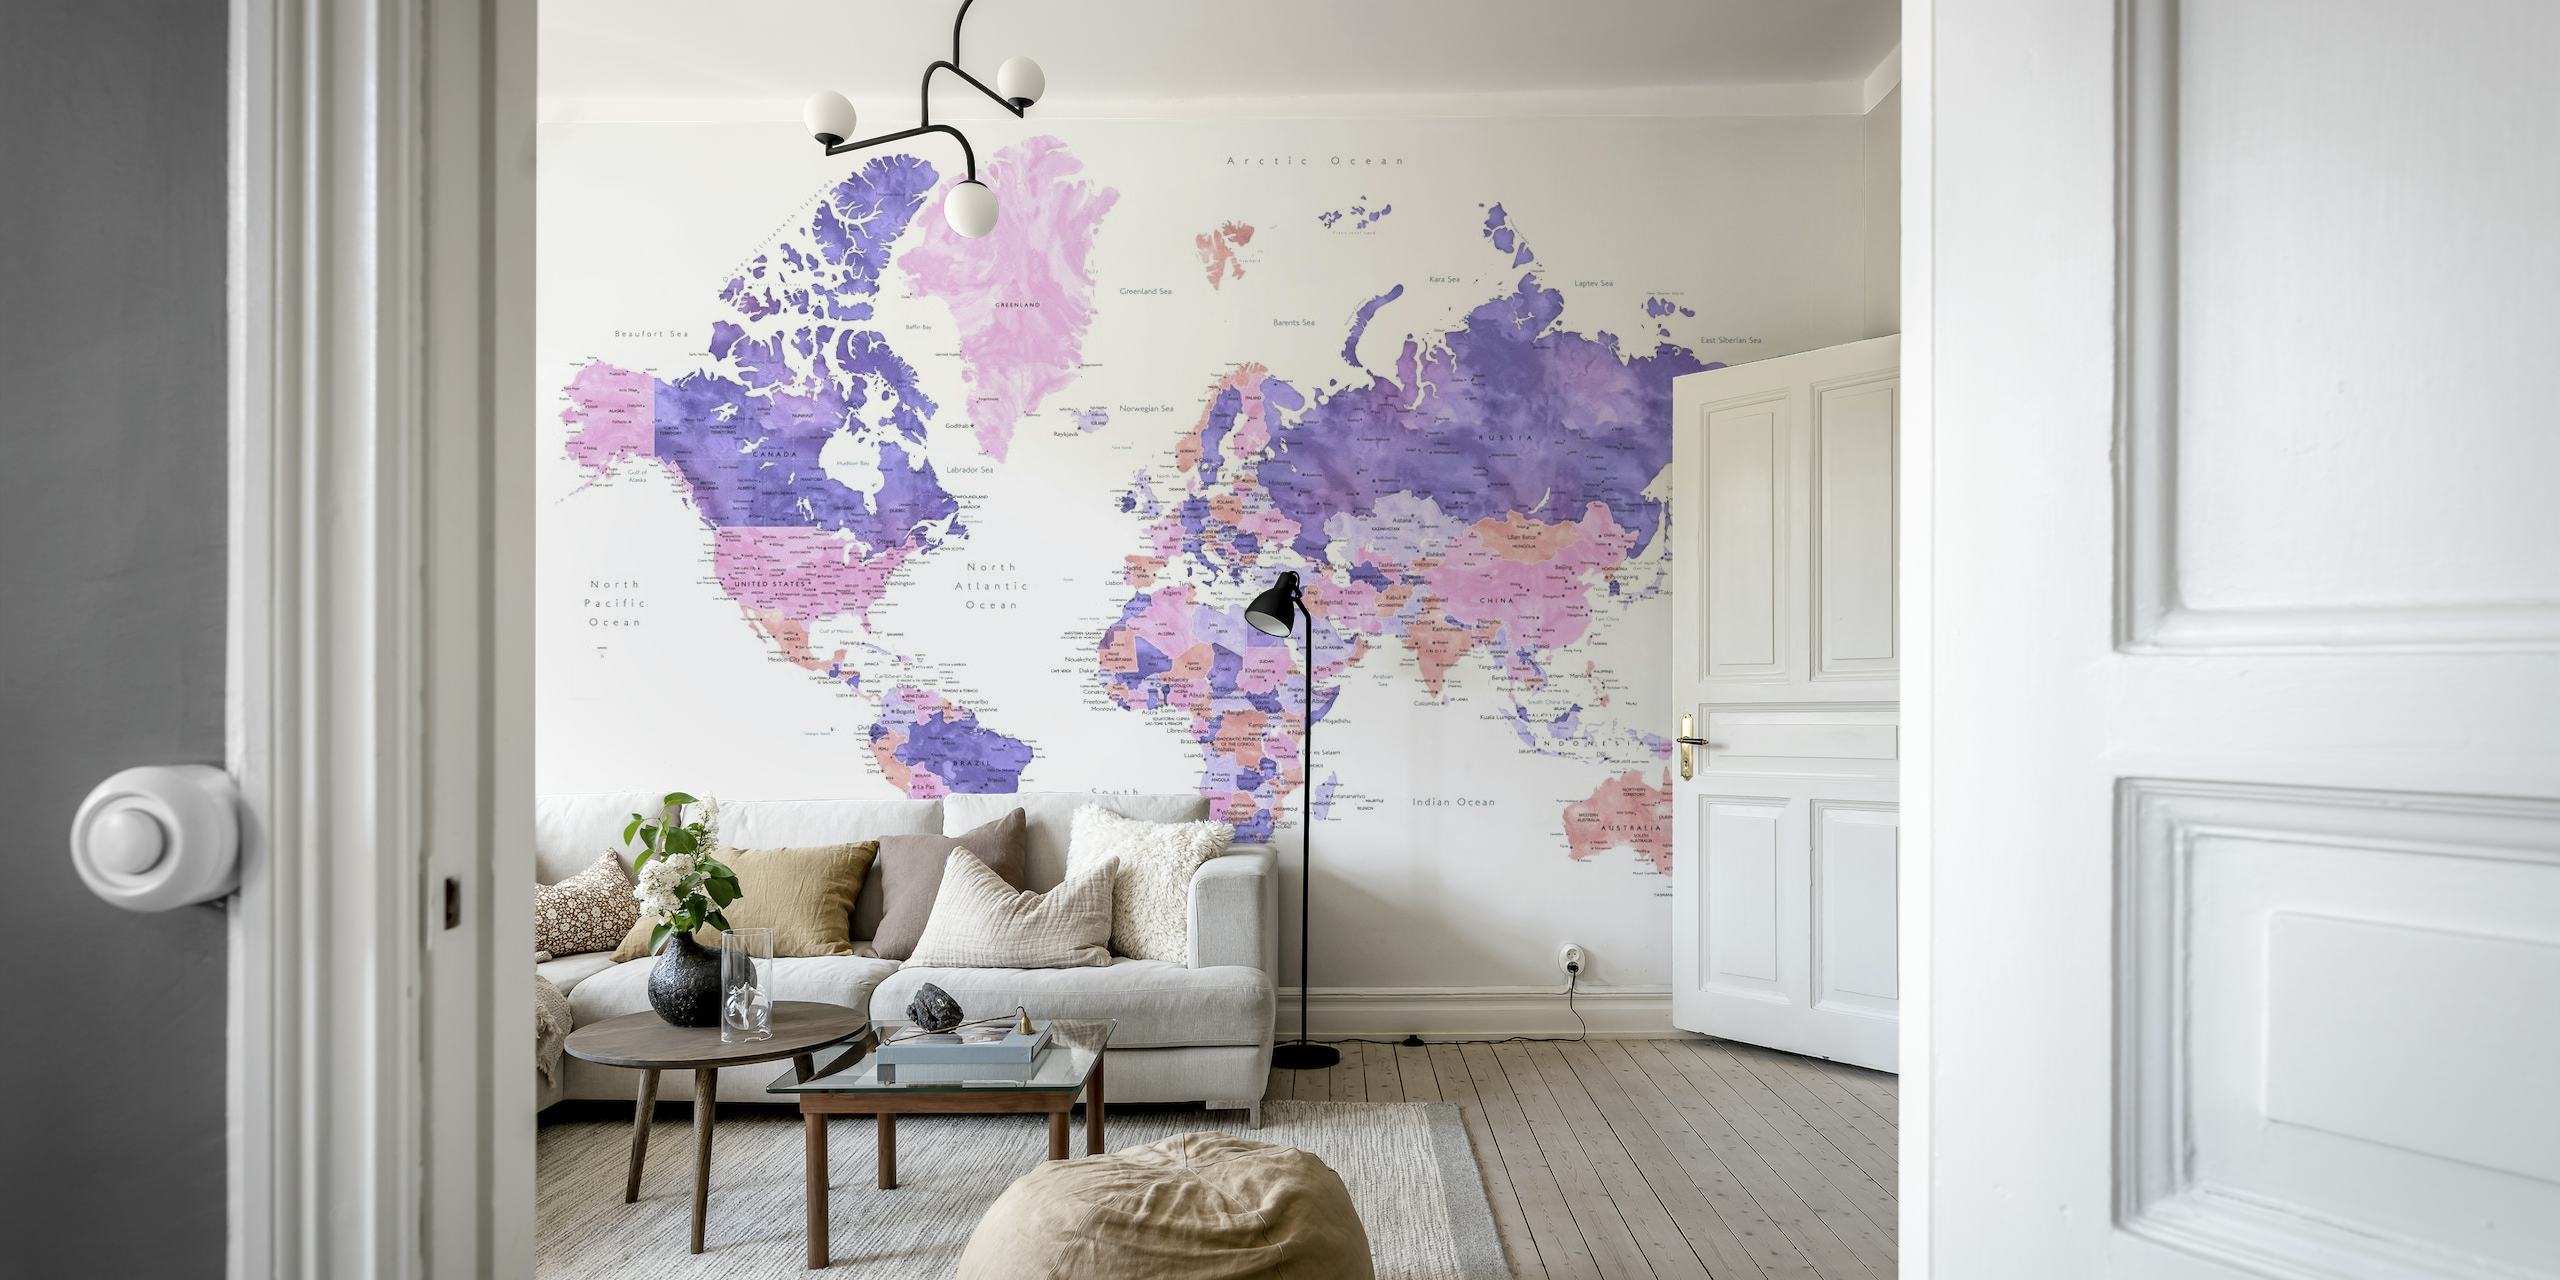 Mapa mundial artístico de Brandie com mural de cidades em cores vibrantes